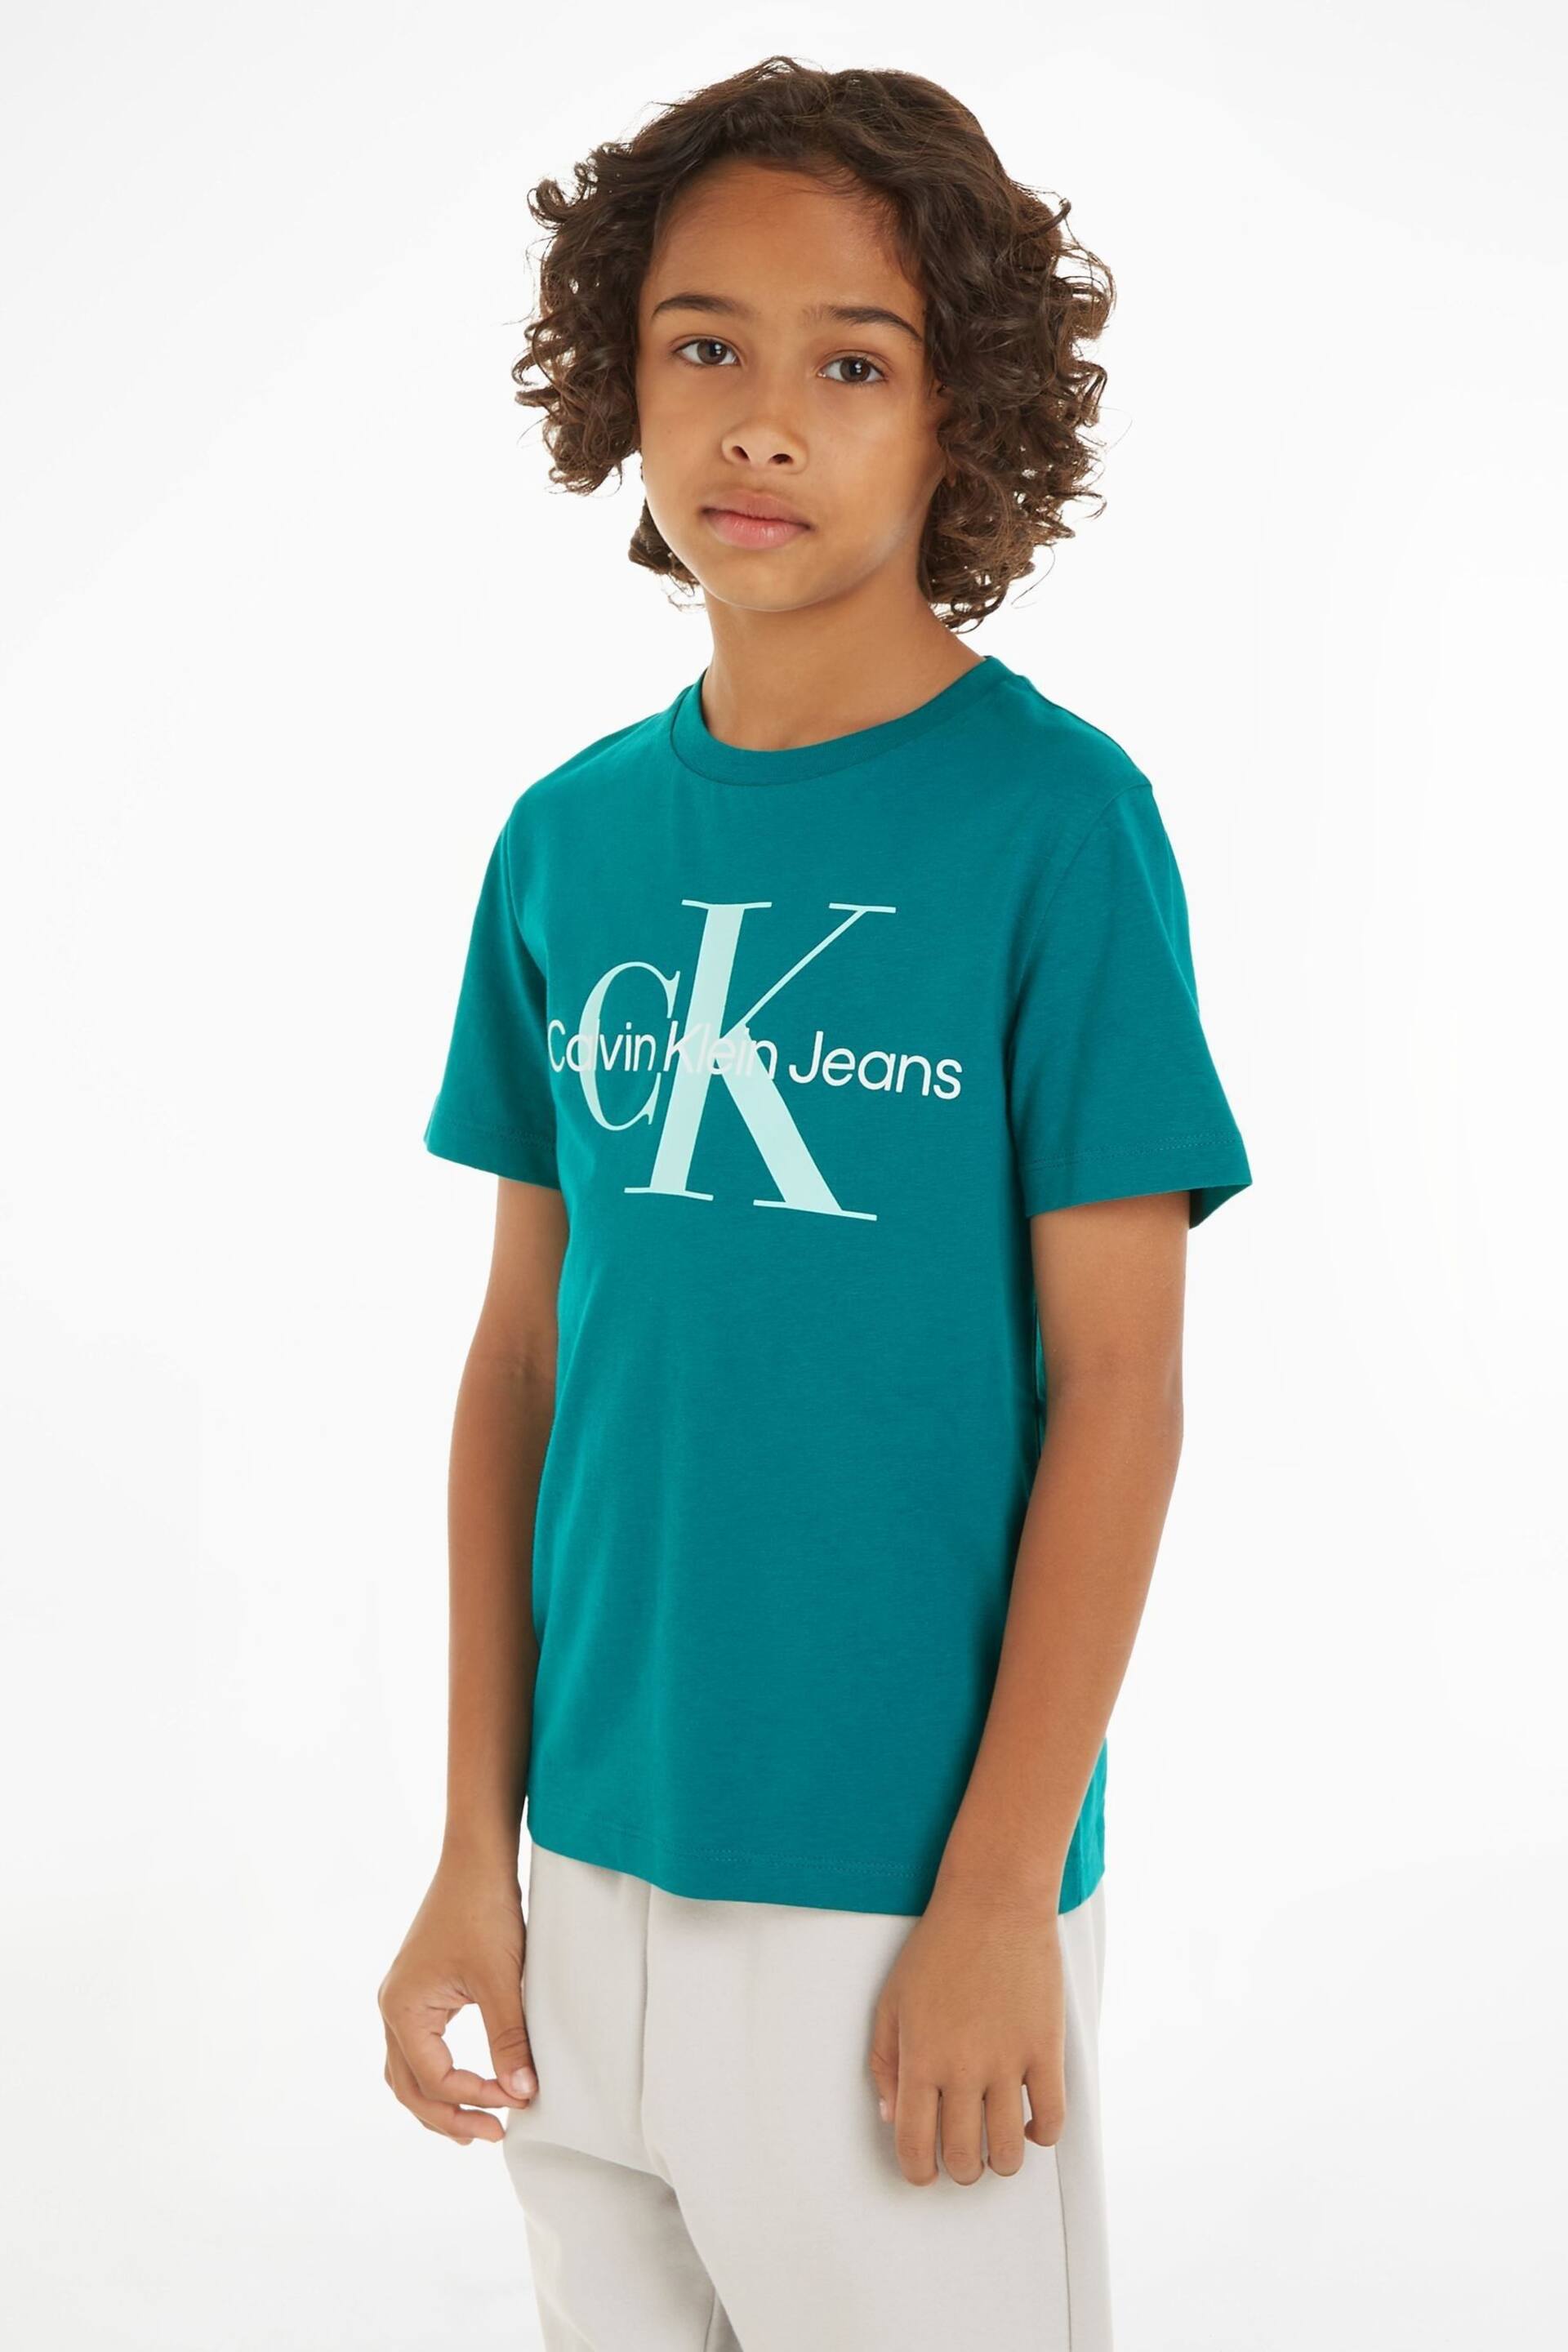 Calvin Klein Green Monogram T-Shirt - Image 1 of 4